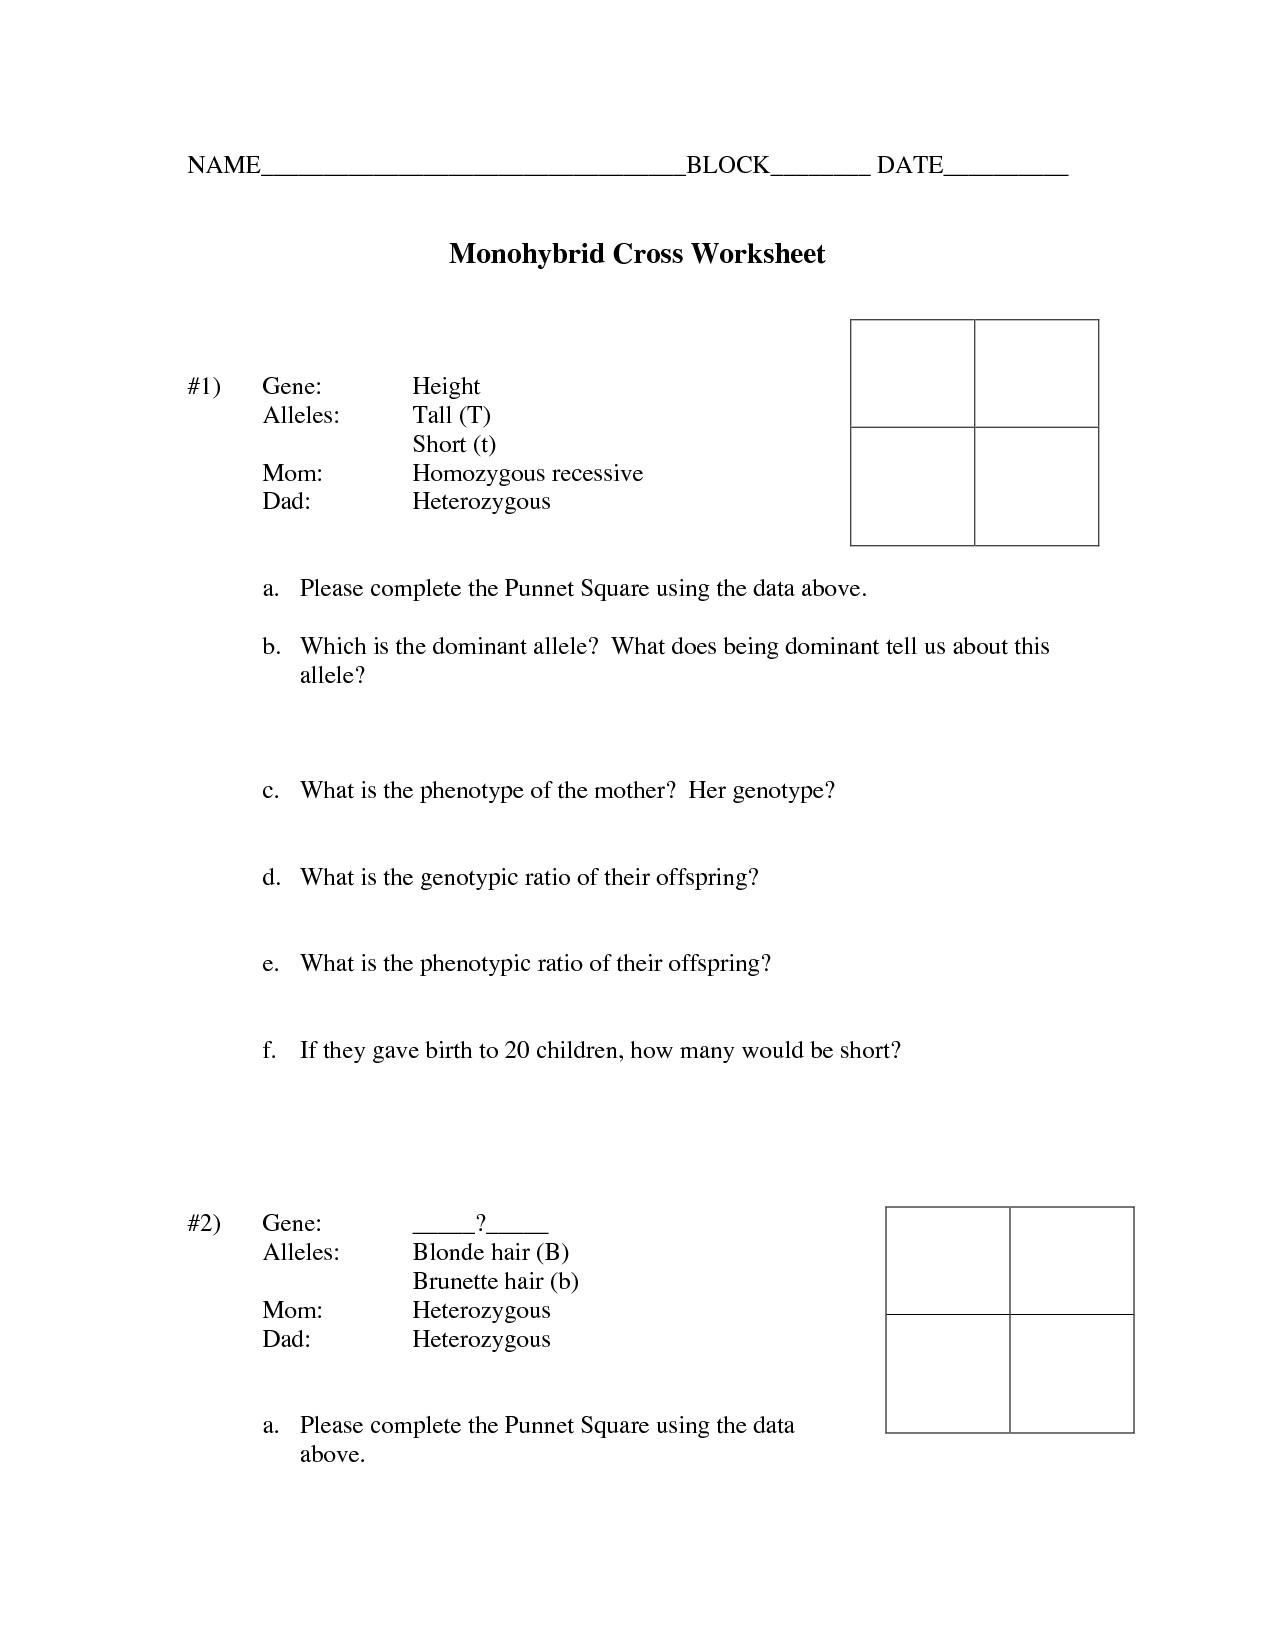 14-best-images-of-monohybrid-cross-worksheet-answer-key-monohybrid-cross-worksheet-answers